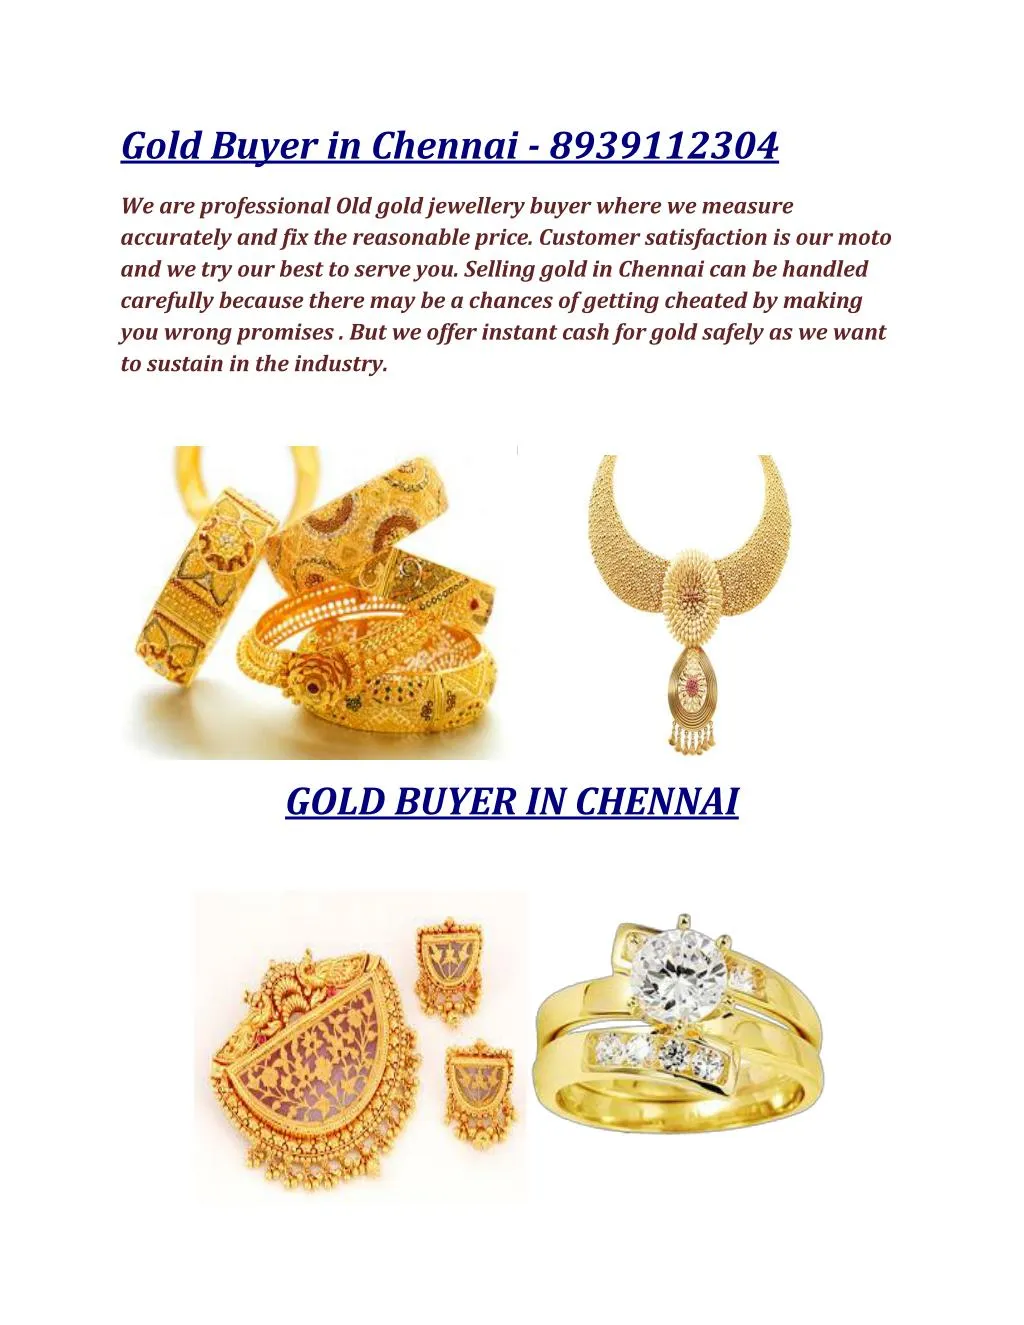 gold buyer in chennai 8939112304